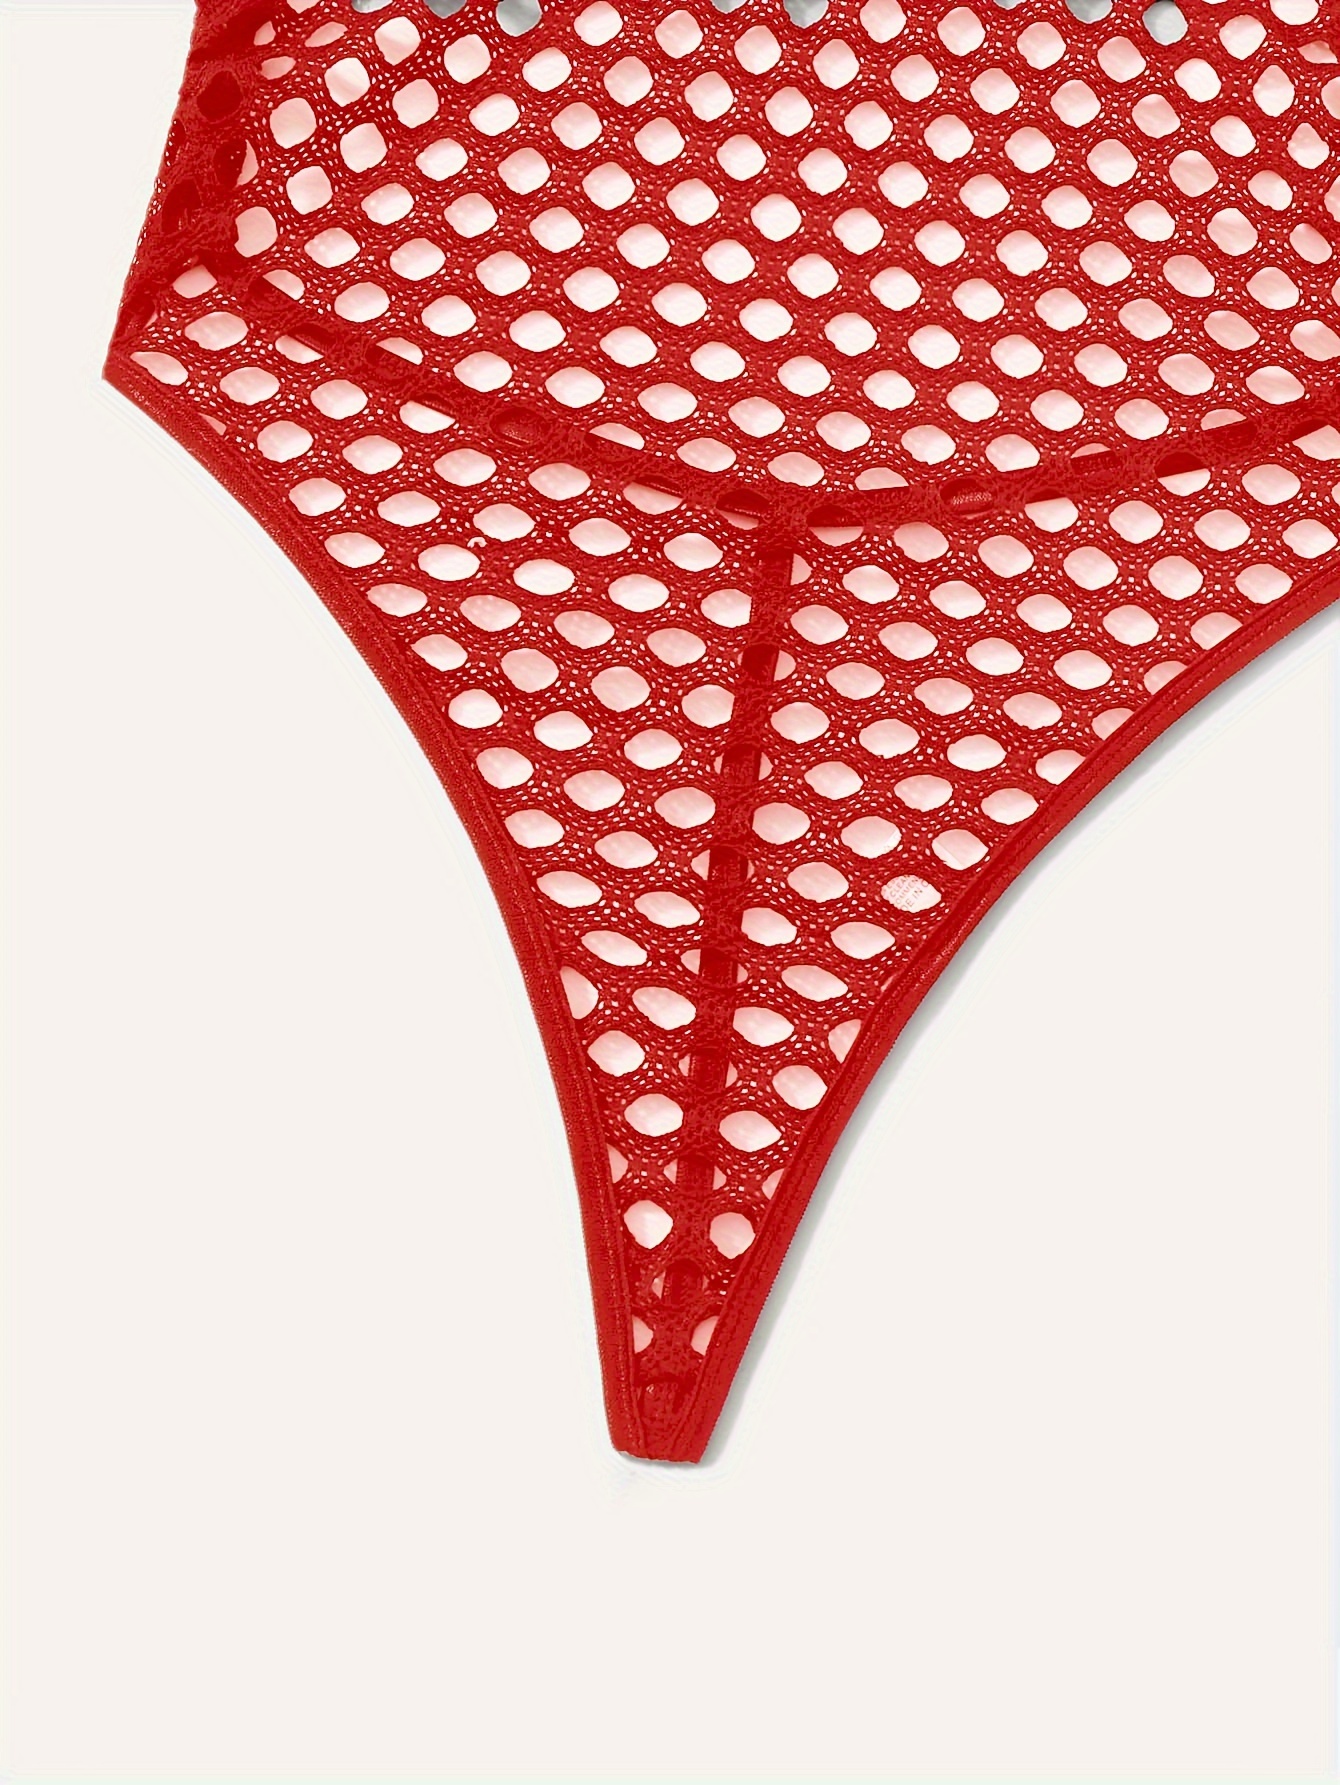 Thong Bodysuit for Women Lingerie Womens High Waisted Fishnet